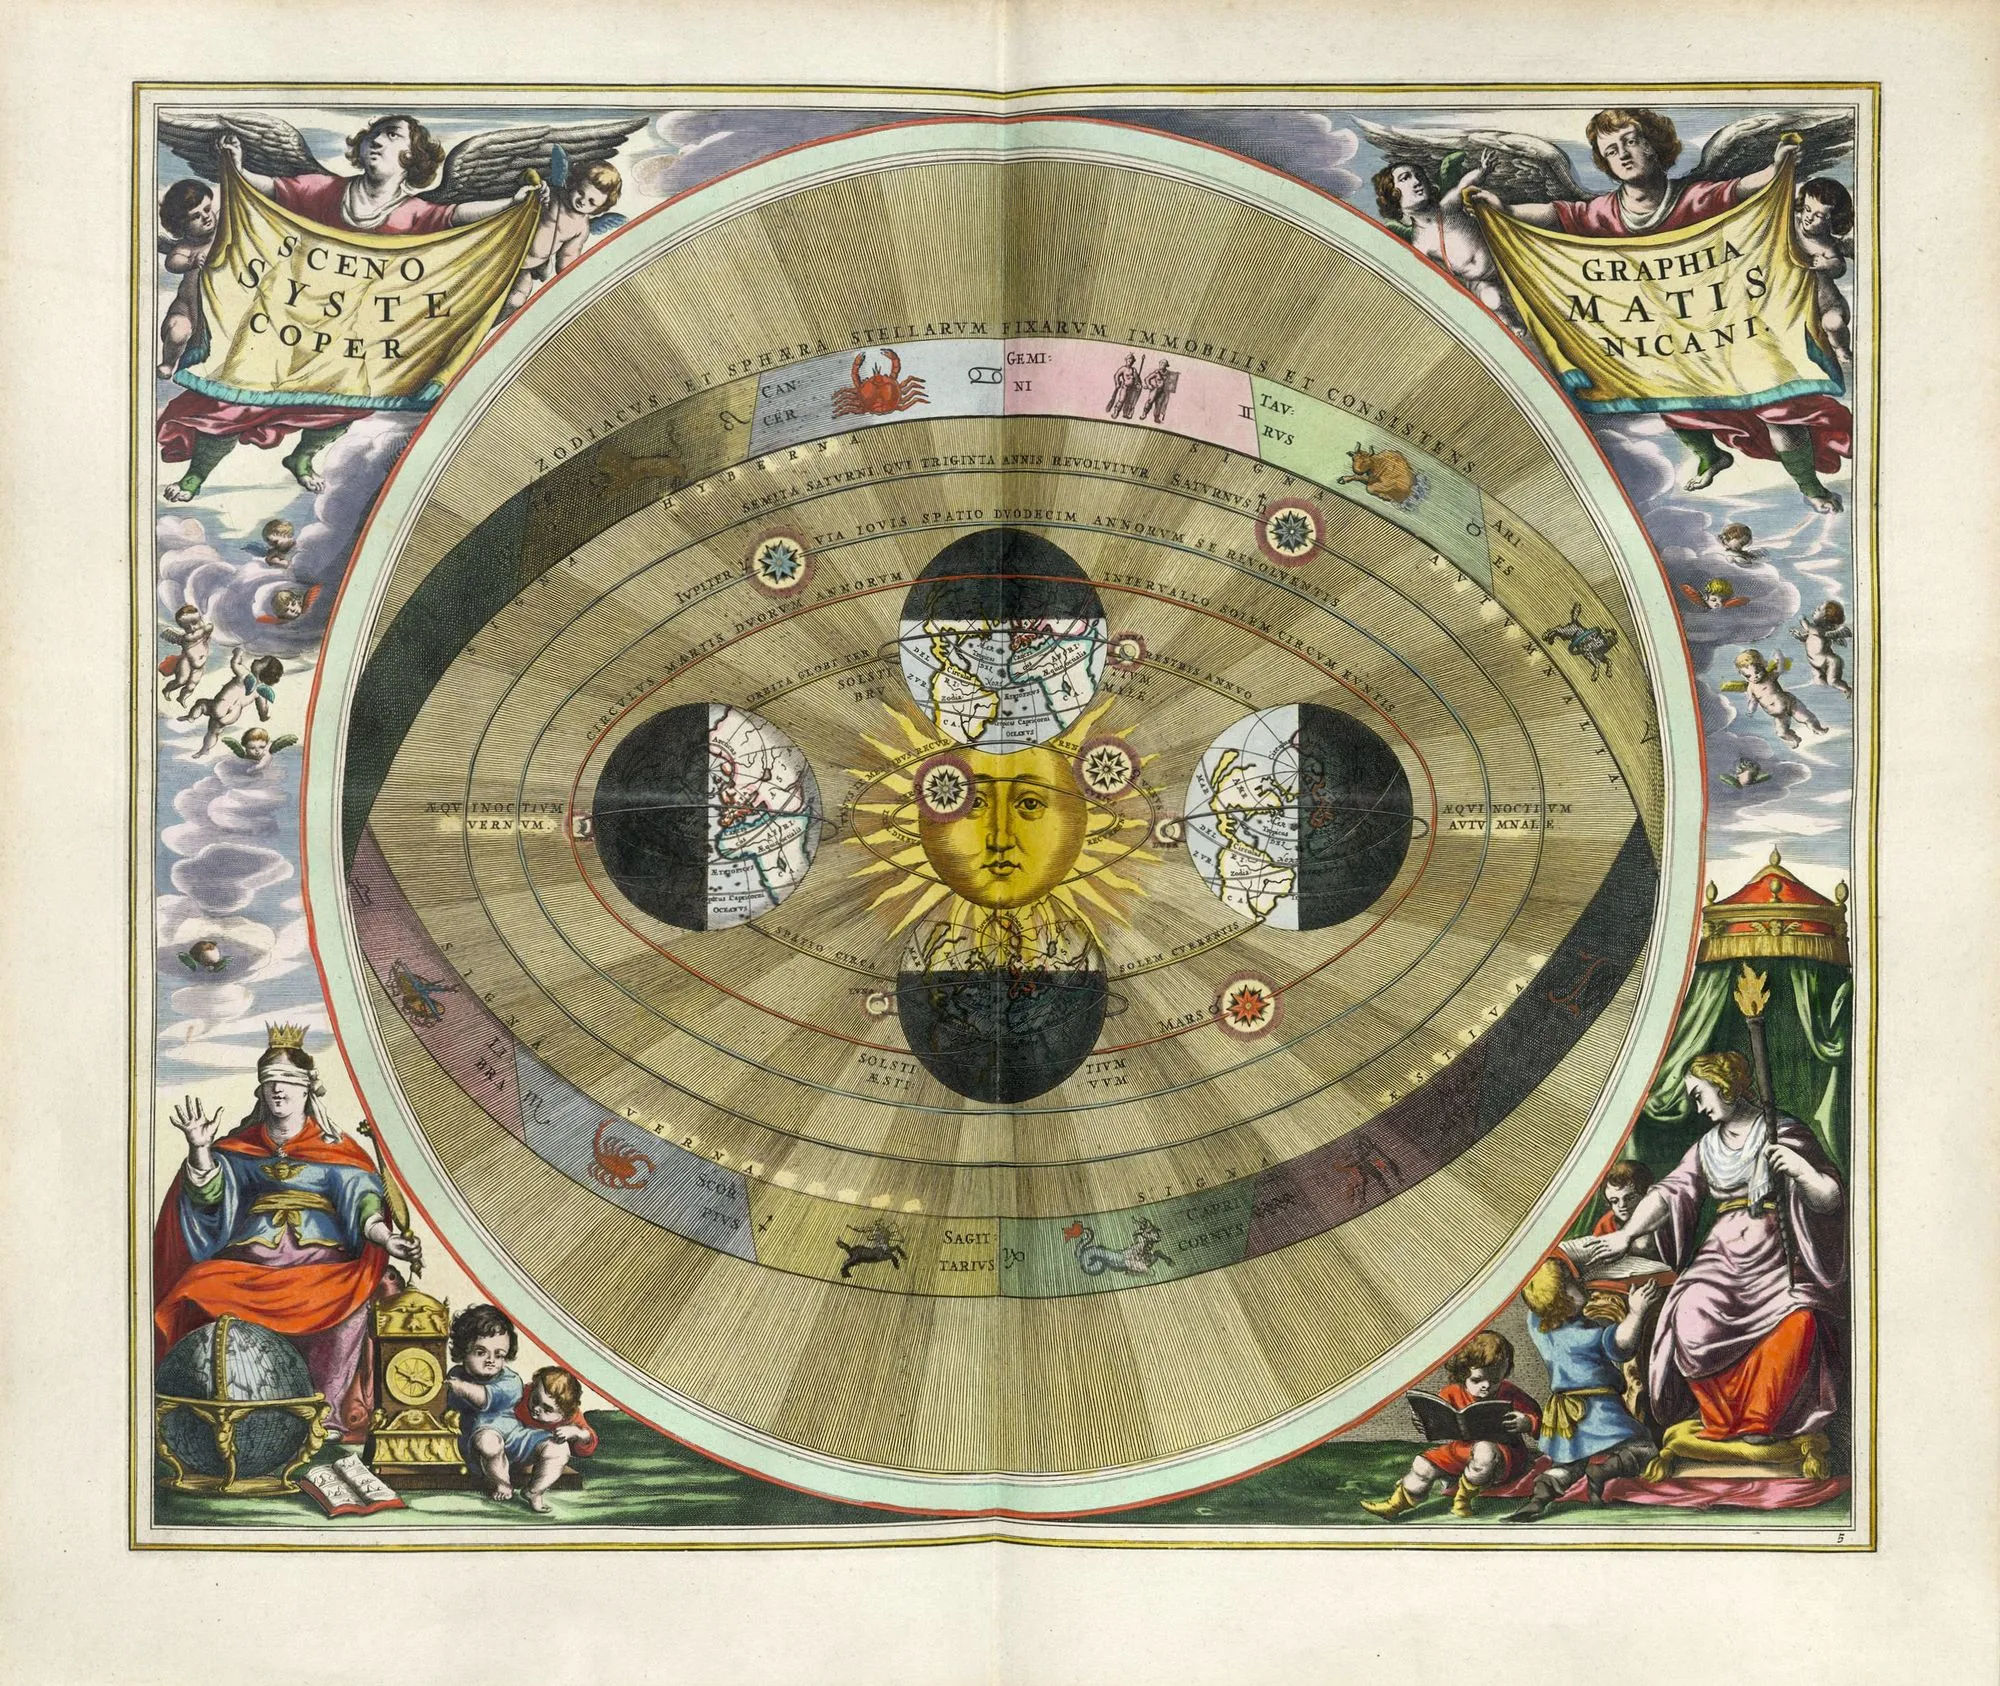 Le système de Copernic, gravure dans Harmonia macrocosmica de Andreas Cellarius, 1660, 28 x 47 cm, BnF, Paris.